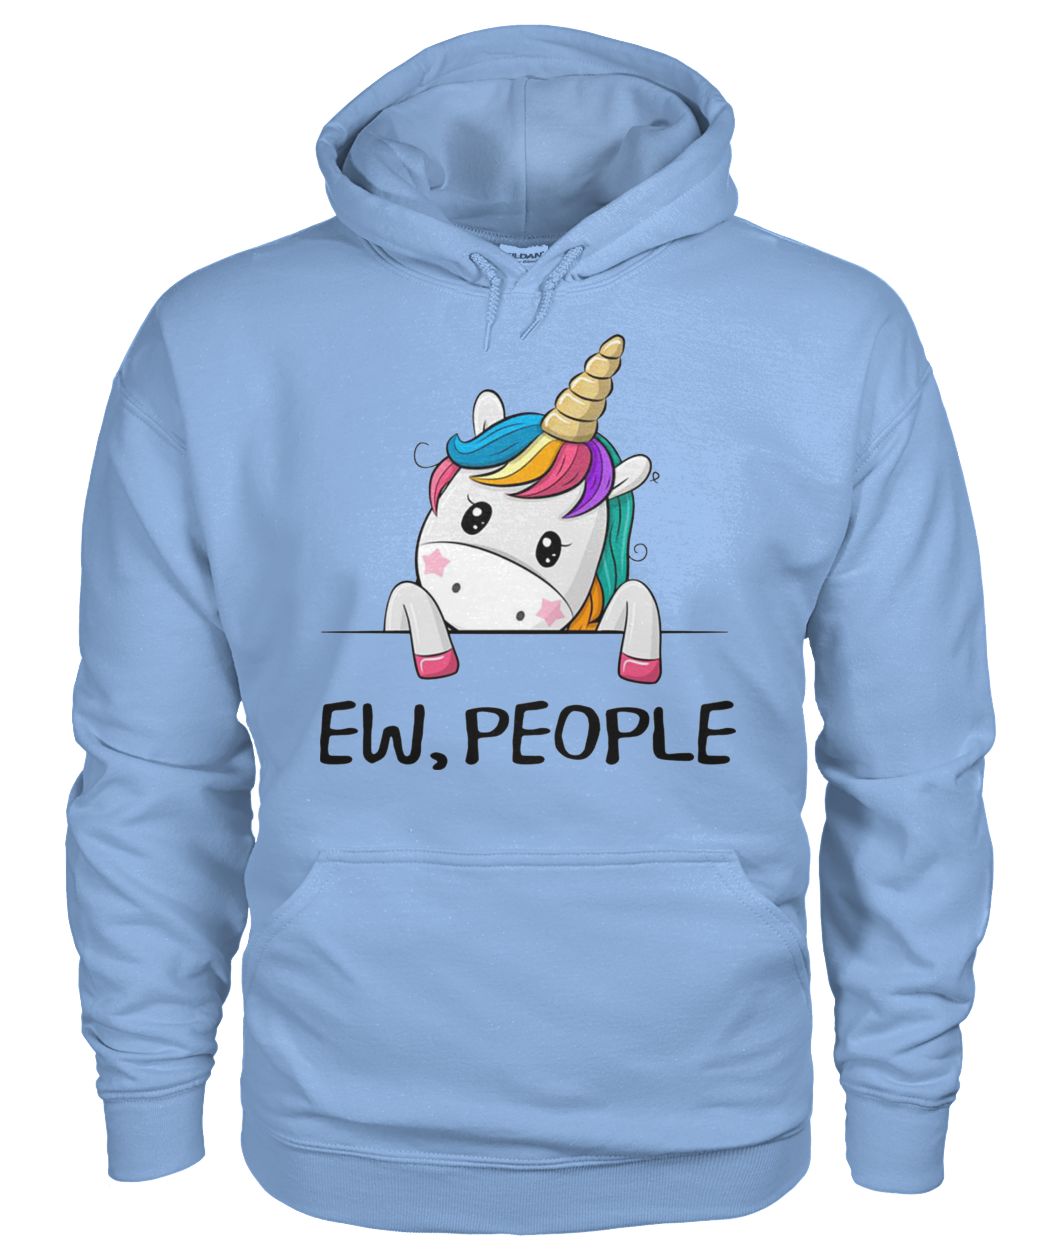 Ew people unicorn gildan hoodie